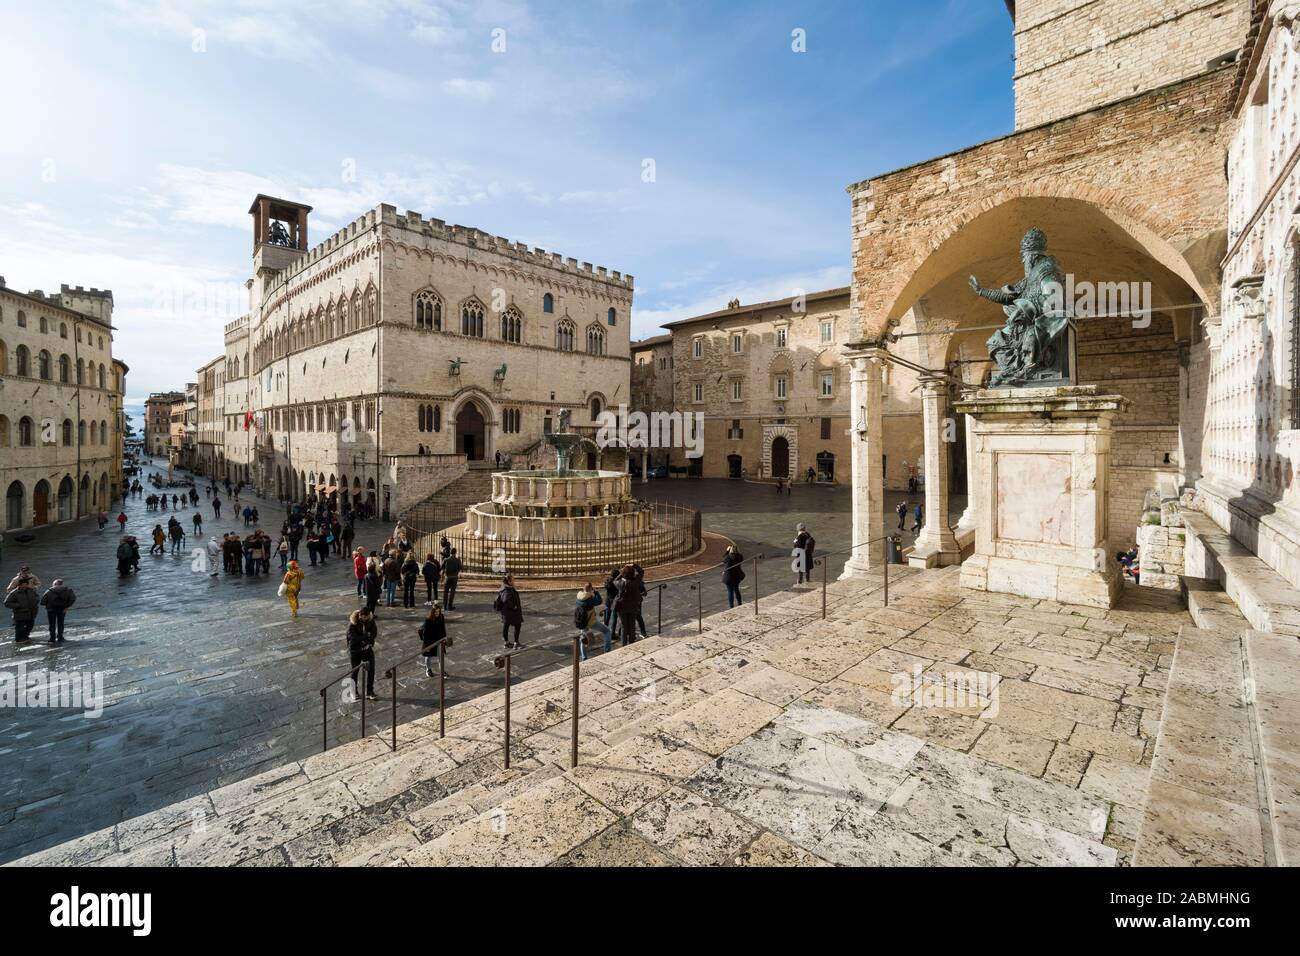 Perugia. L'Italia. La centrale Piazza IV Novembre, Corso Pietro Vannucci, il Palazzo dei Priori (sinistra), Fontana Maggiore (centro) e la Cattedrale di San Foto Stock